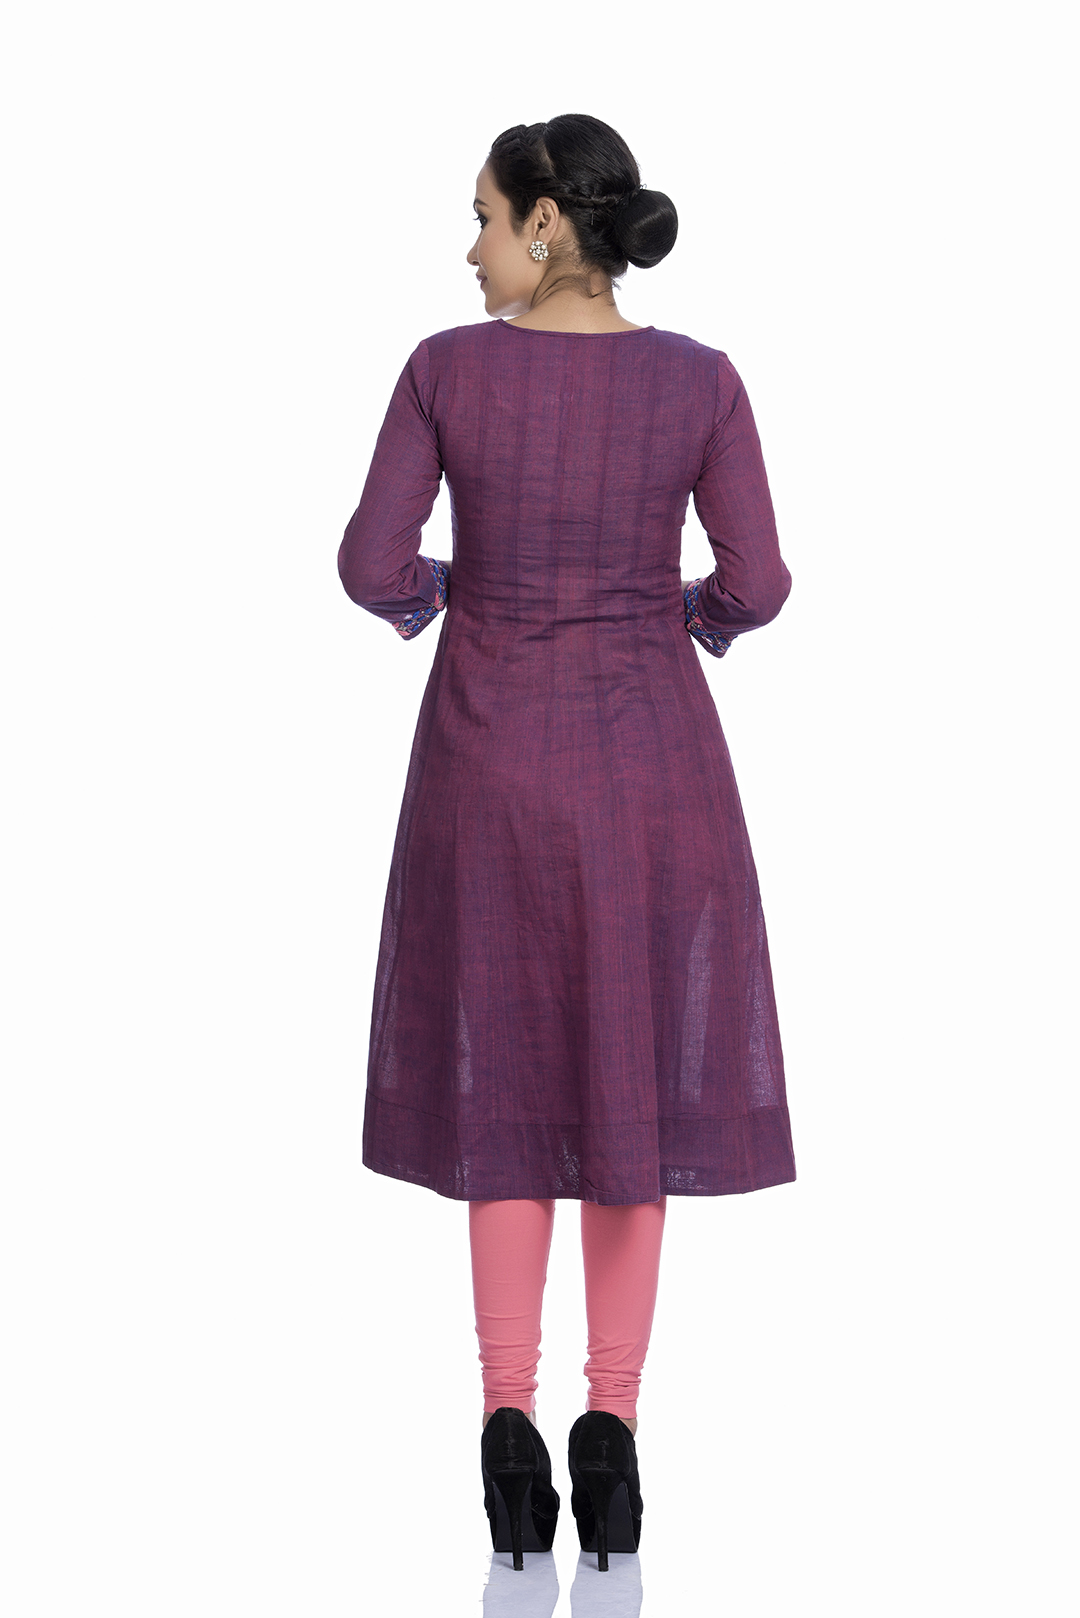 Buy Purple Rayon Casual Wear Lucknowi Kurti Online From Wholesale Salwar.